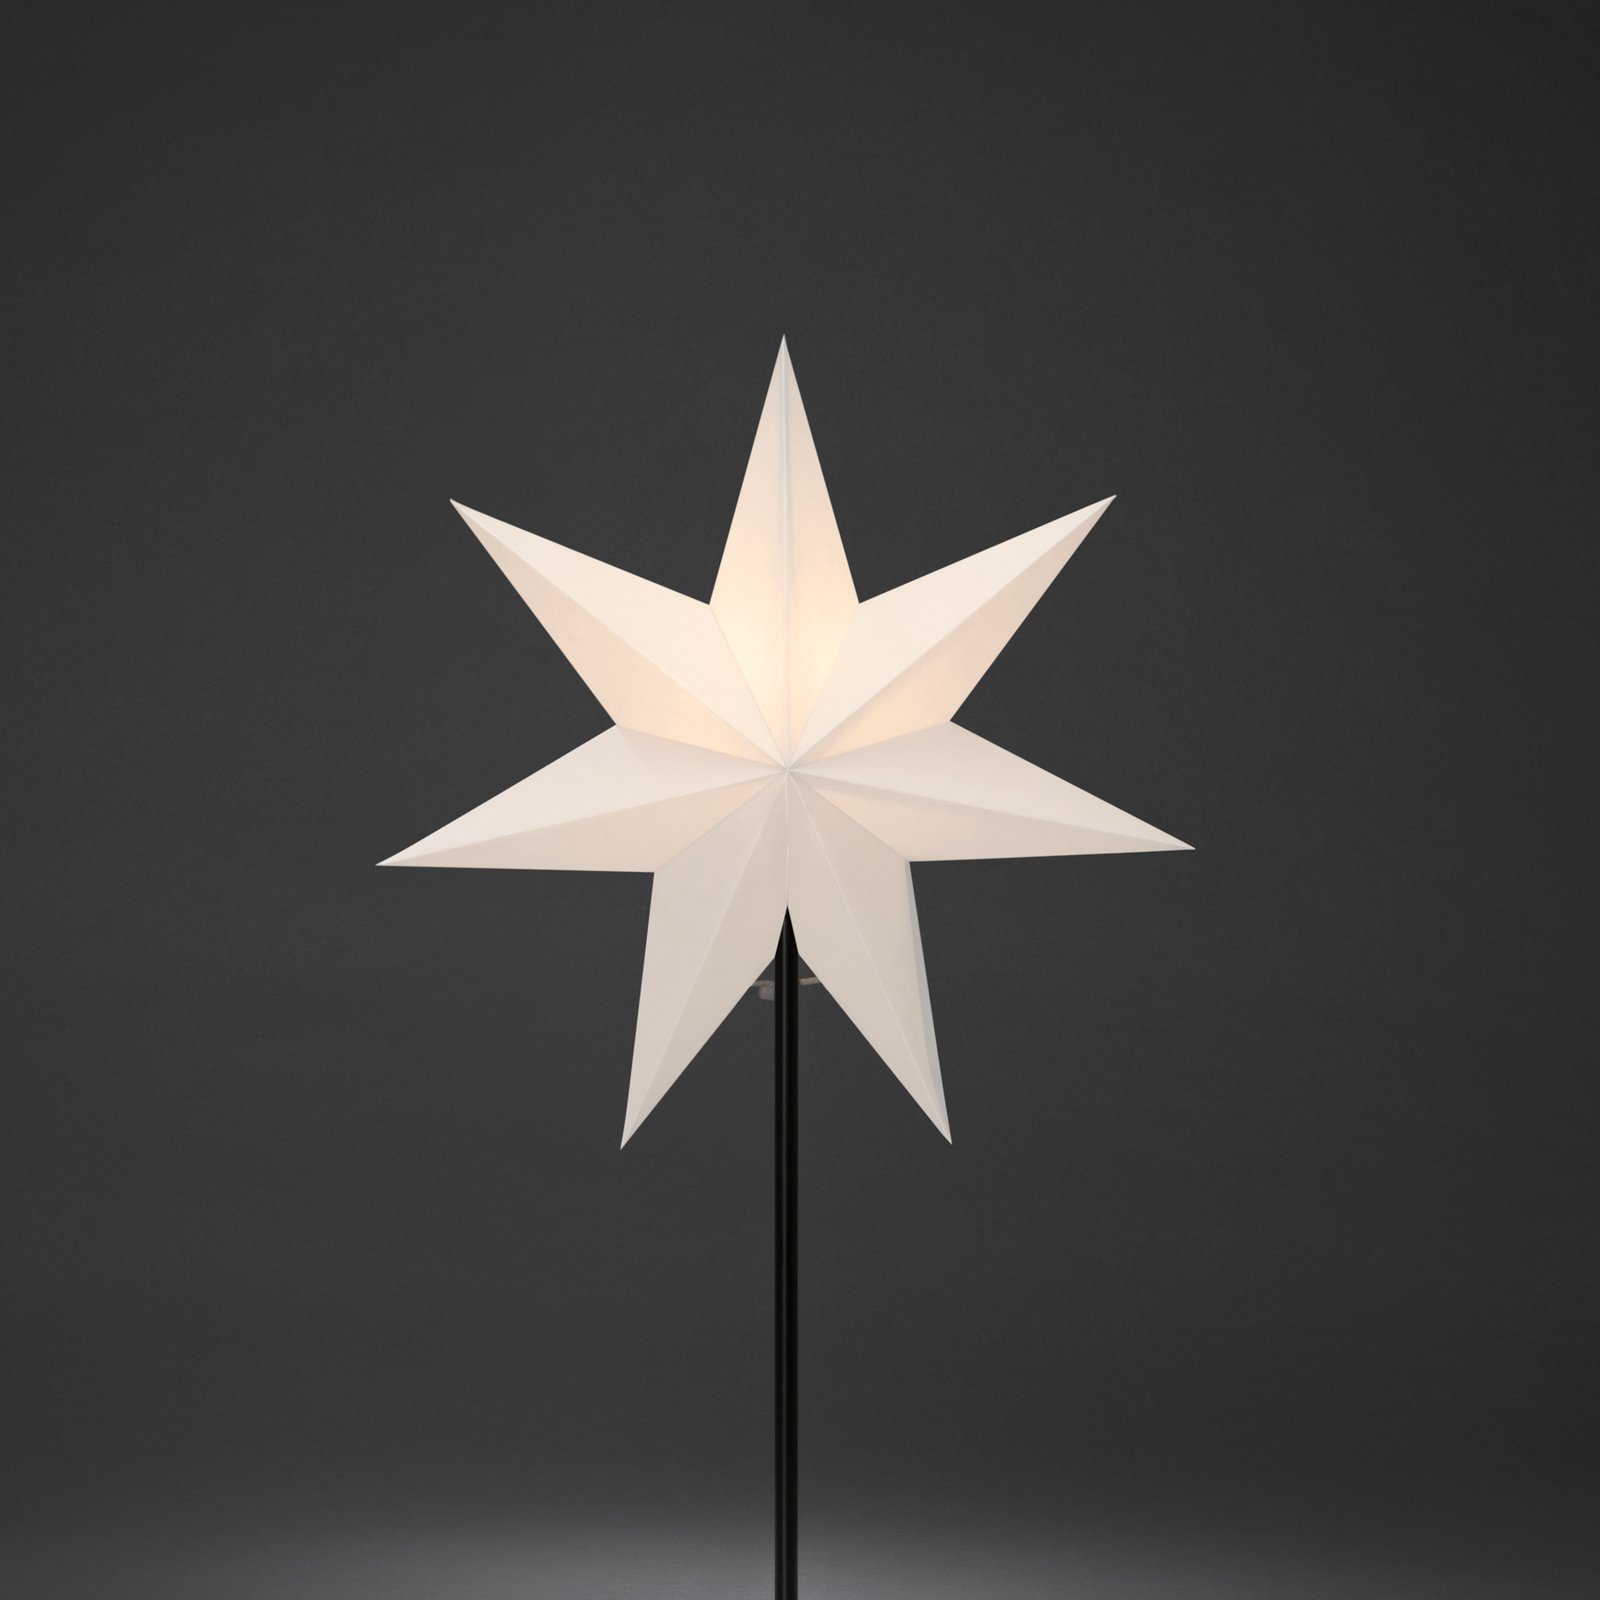 Διακοσμητικό ελαφρύ χάρτινο αστέρι, 7 σημεία, λευκό Ύψος 65 cm